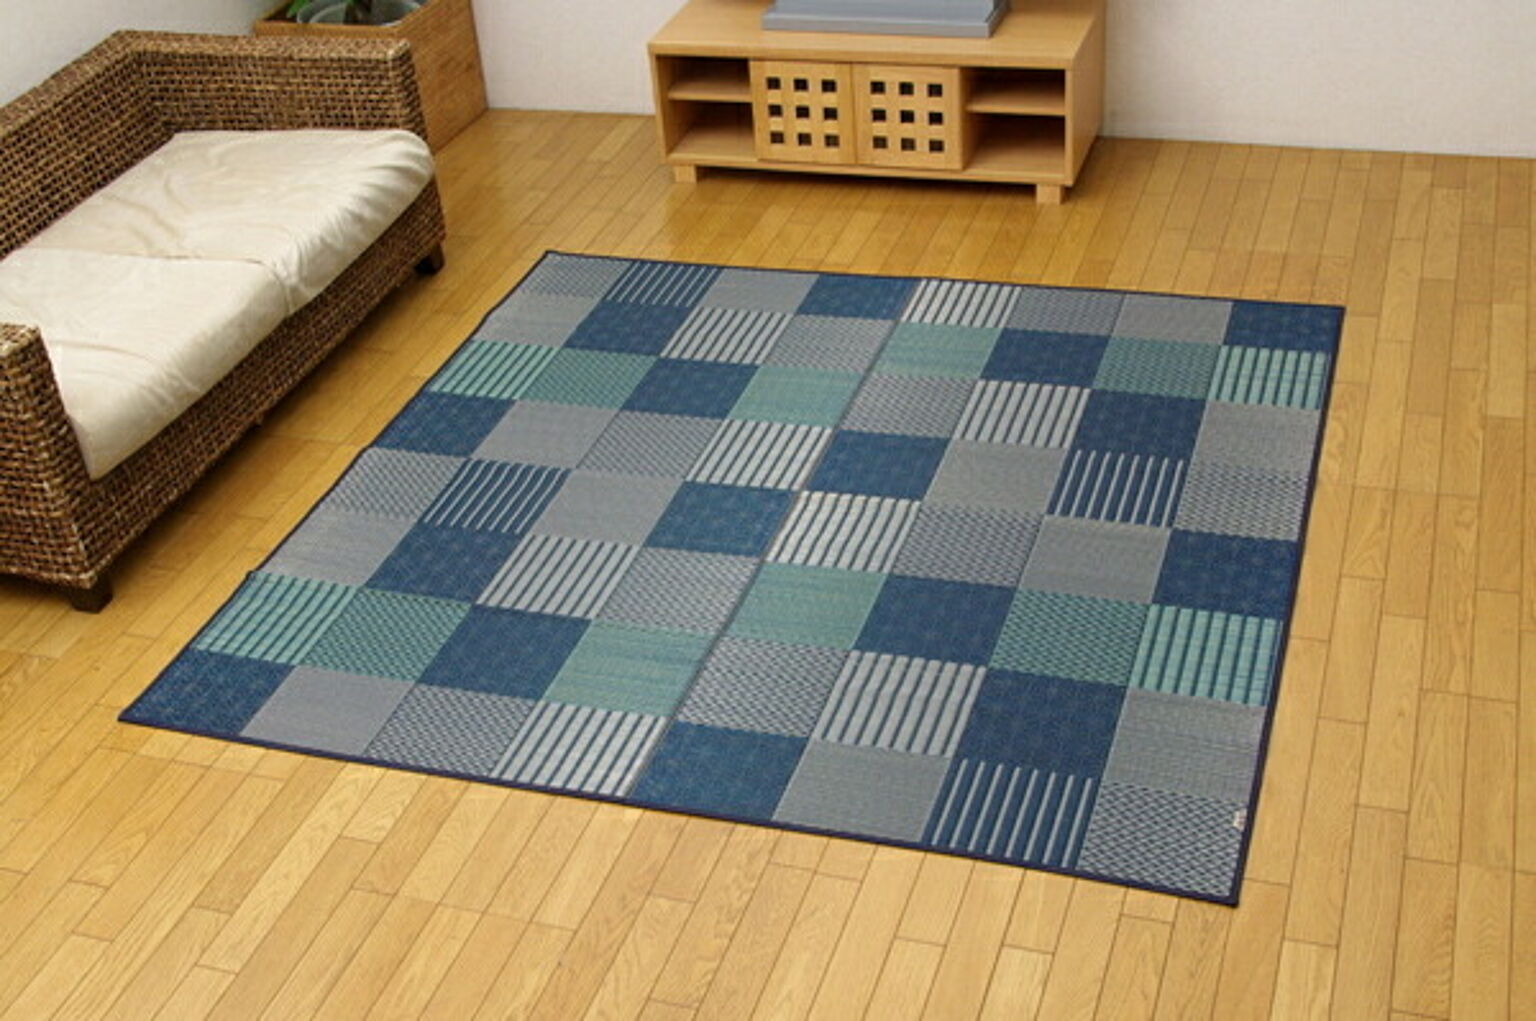 純国産 袋織い草ラグカーペット 『京刺子』 ブルー 約191×250cm【ブルー】 